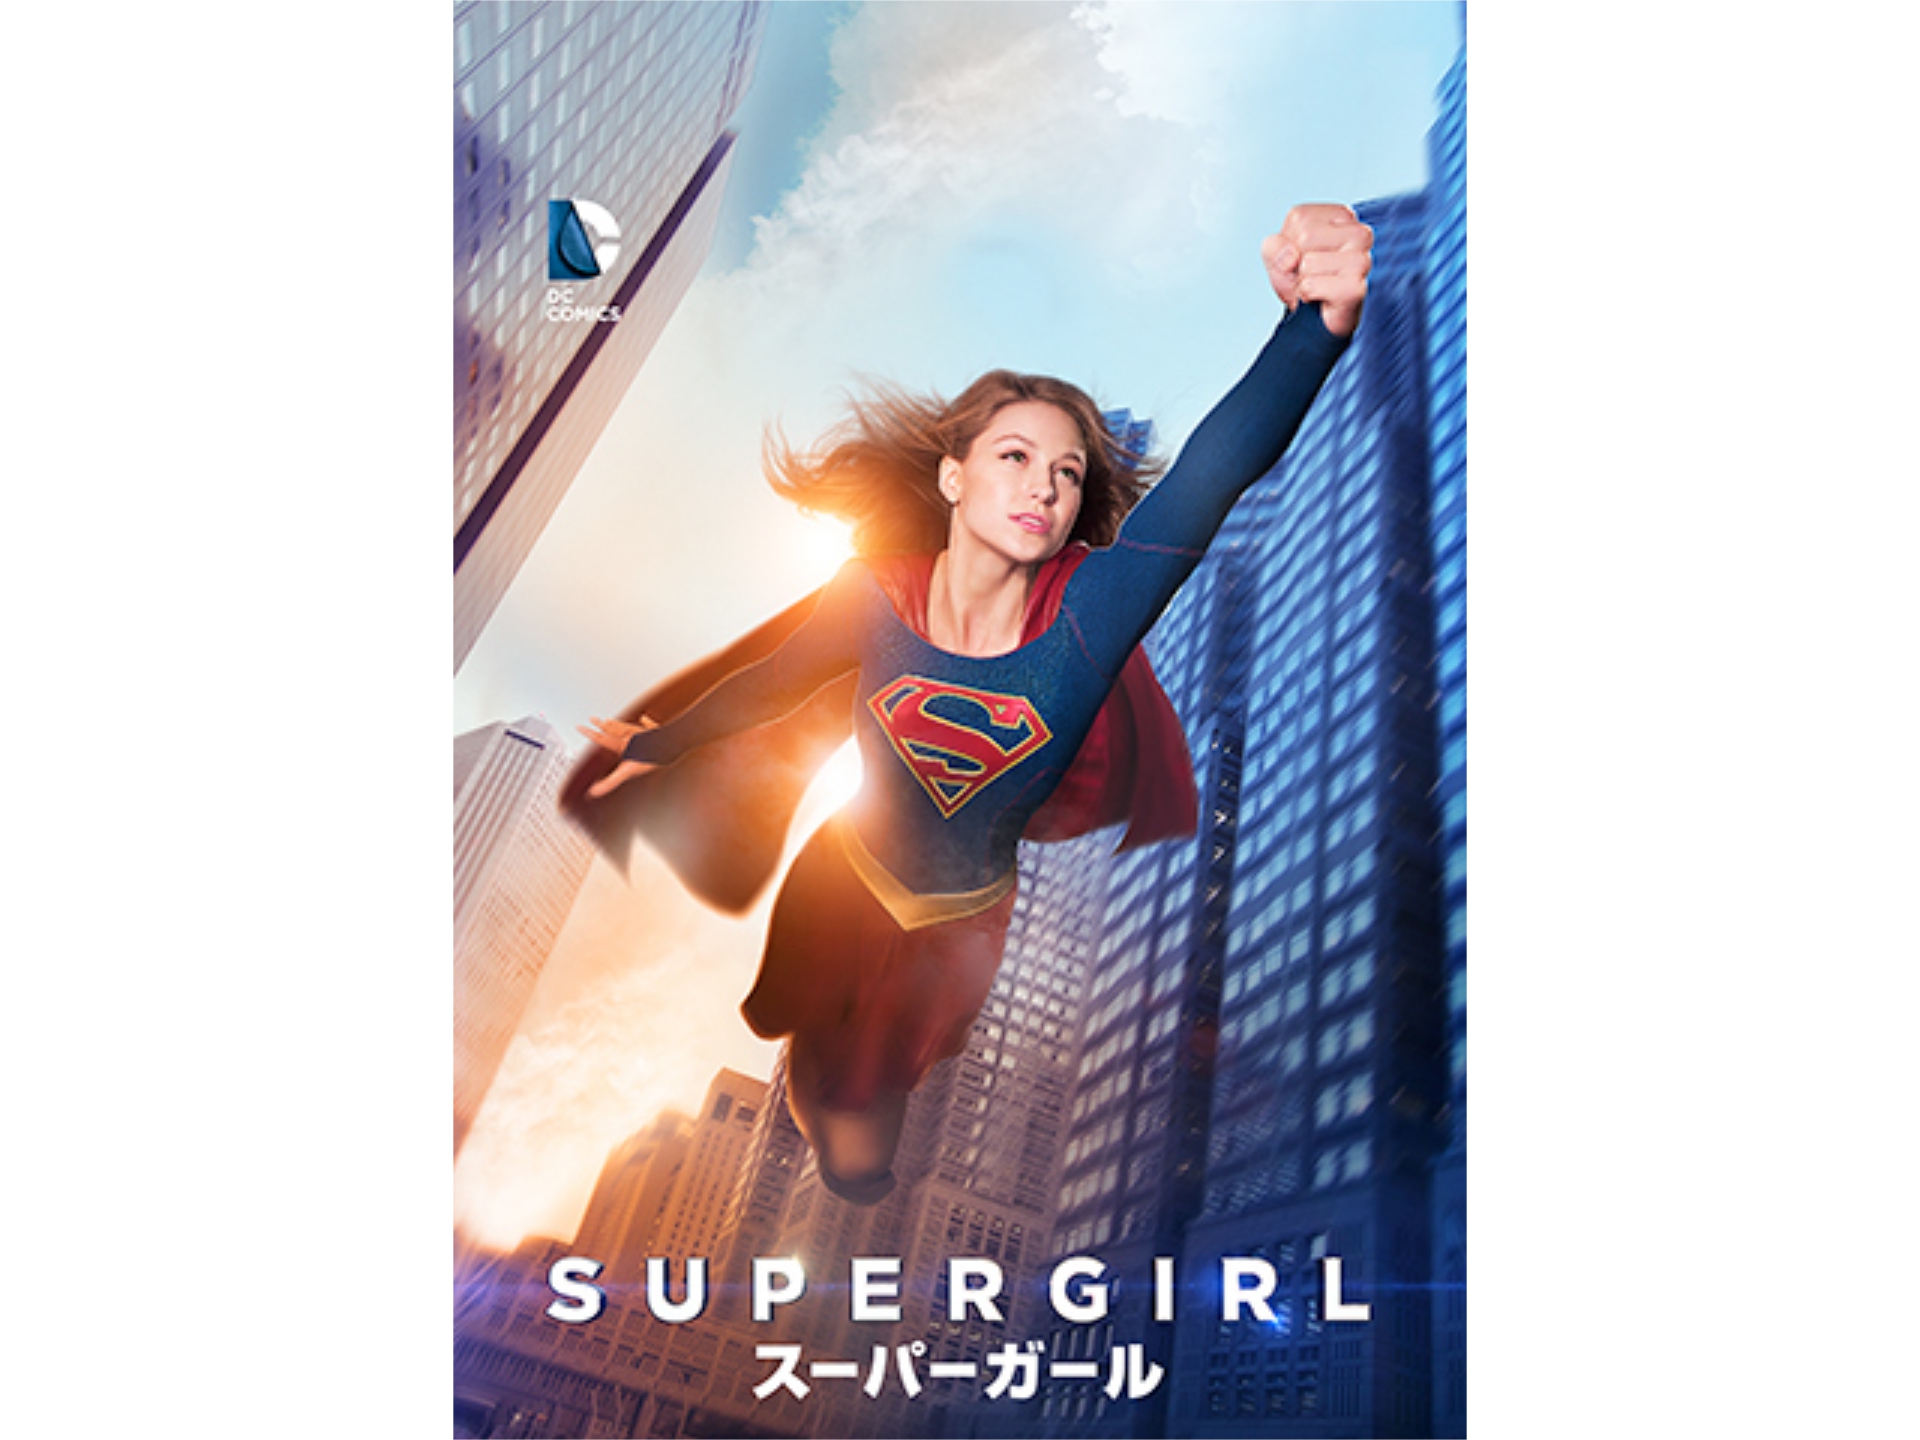 ドラマ Supergirl スーパーガール ファースト シーズン 第16話 レッド クリプトナイト 吹き替え 字幕版 フル動画 初月無料 動画配信サービスのビデオマーケット